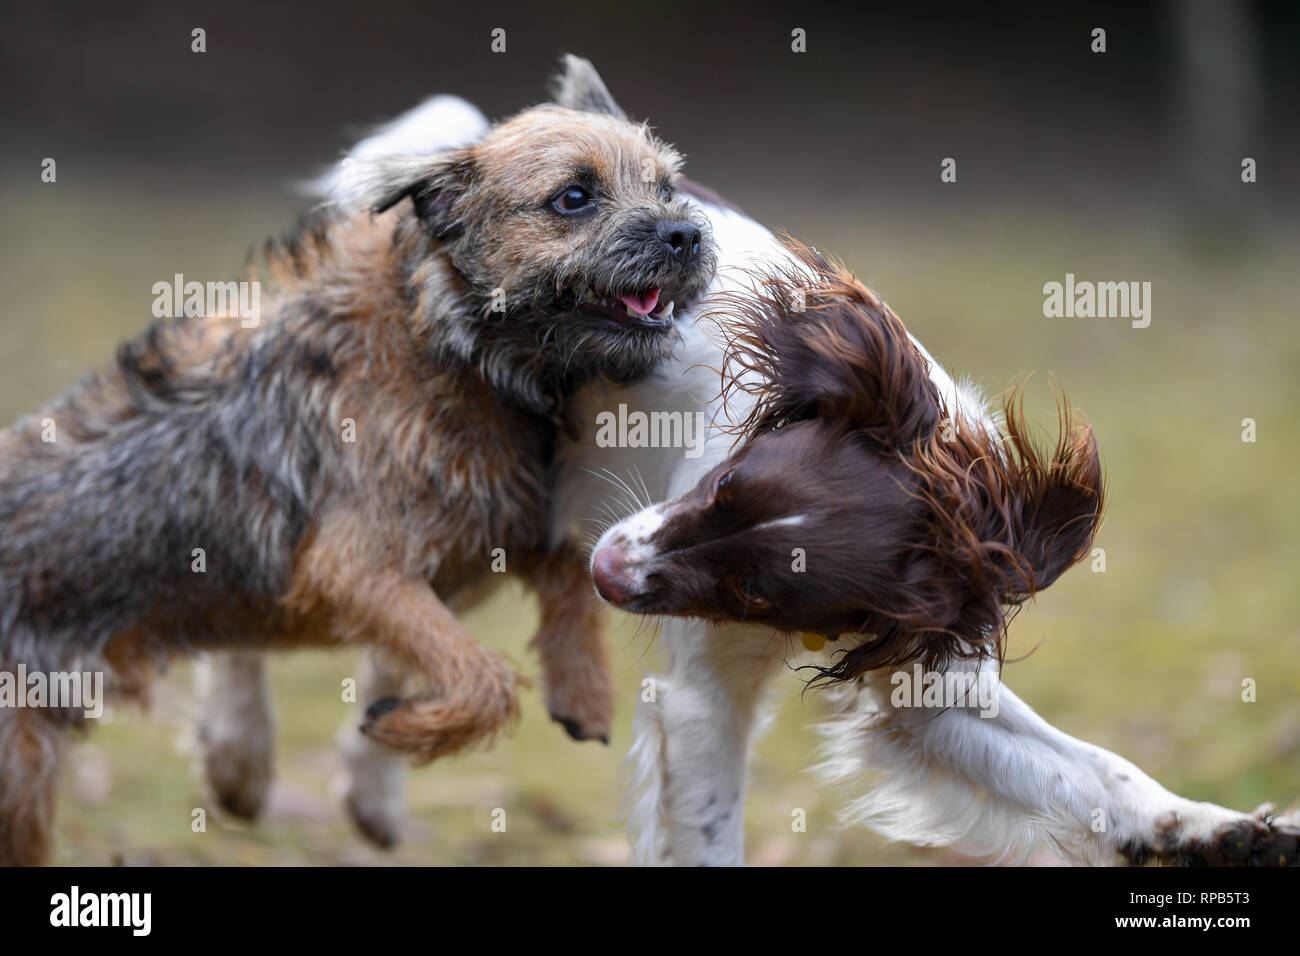 Zwei junge (1 Jahre) English Springer Spaniel und Terrier Hunde spielen Kämpfen zeigt Zähne und Aggression, aber in einer nicht schädlichen Weise. Stockfoto